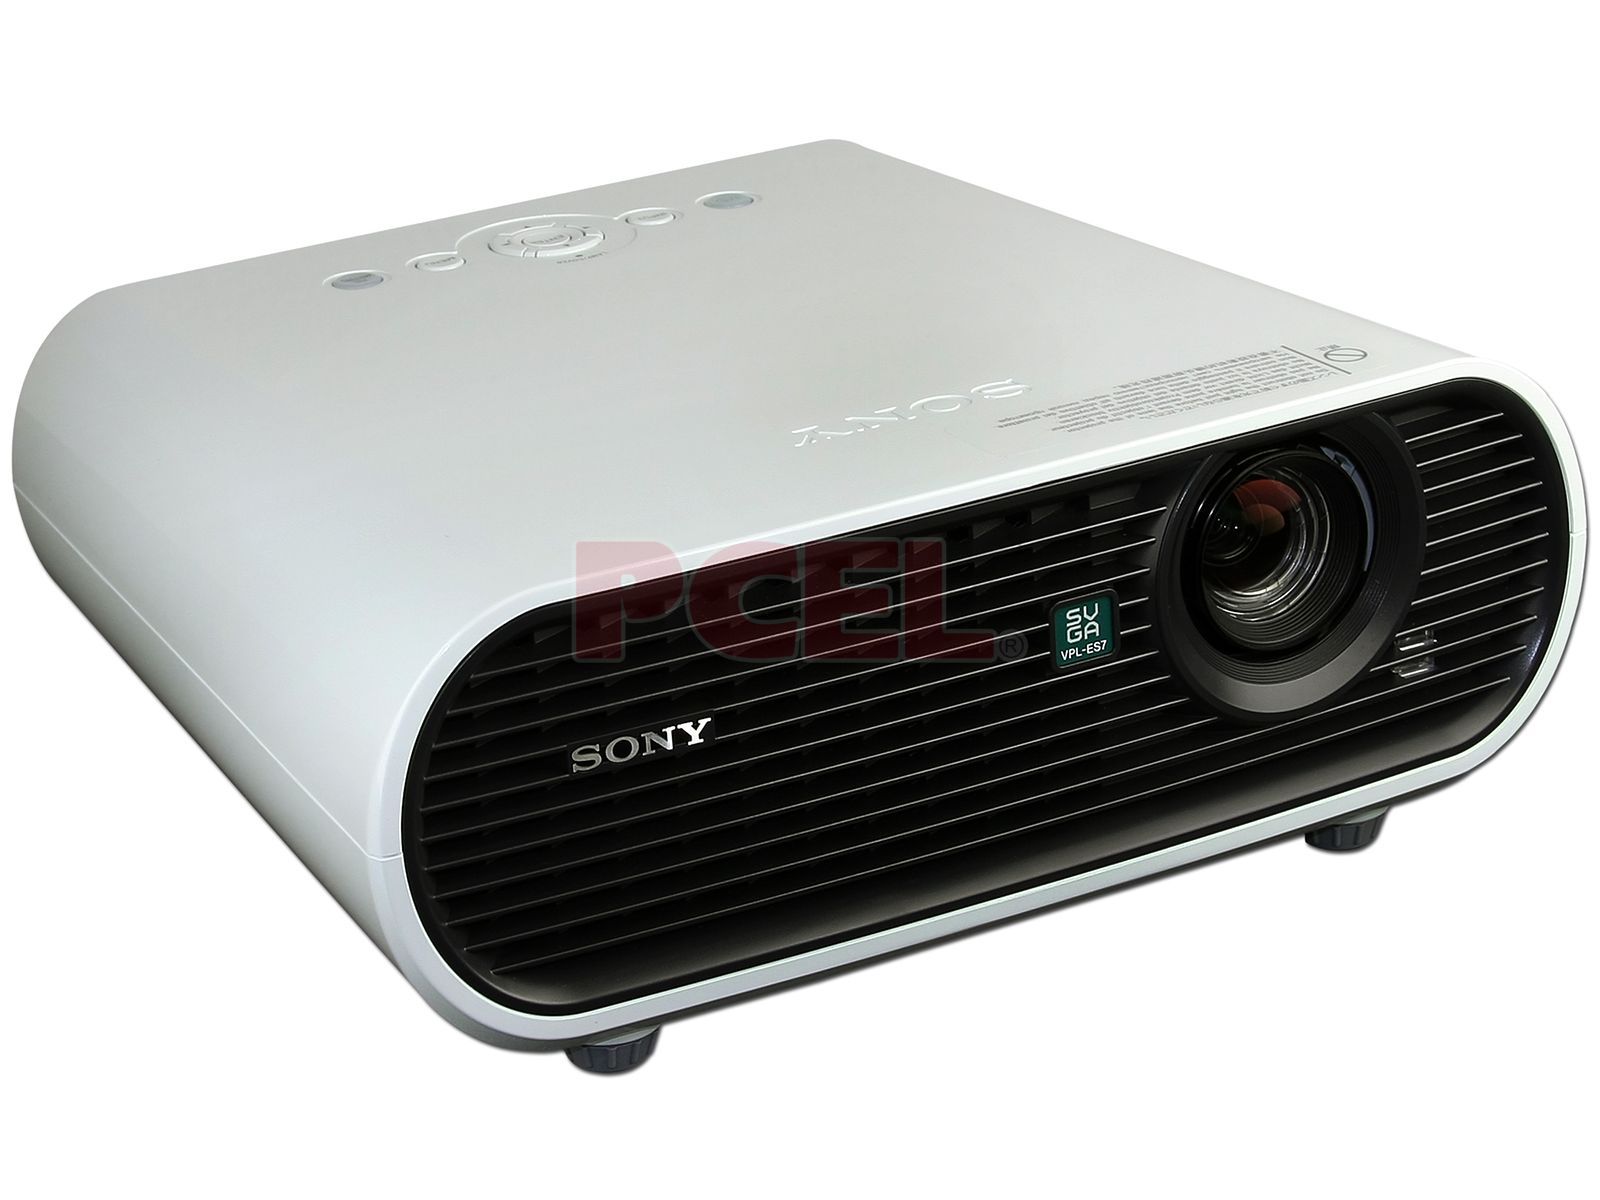 Proyector Sony VPL-ES7, Resolución de 800 x 600 y 2,000 lúmenes.